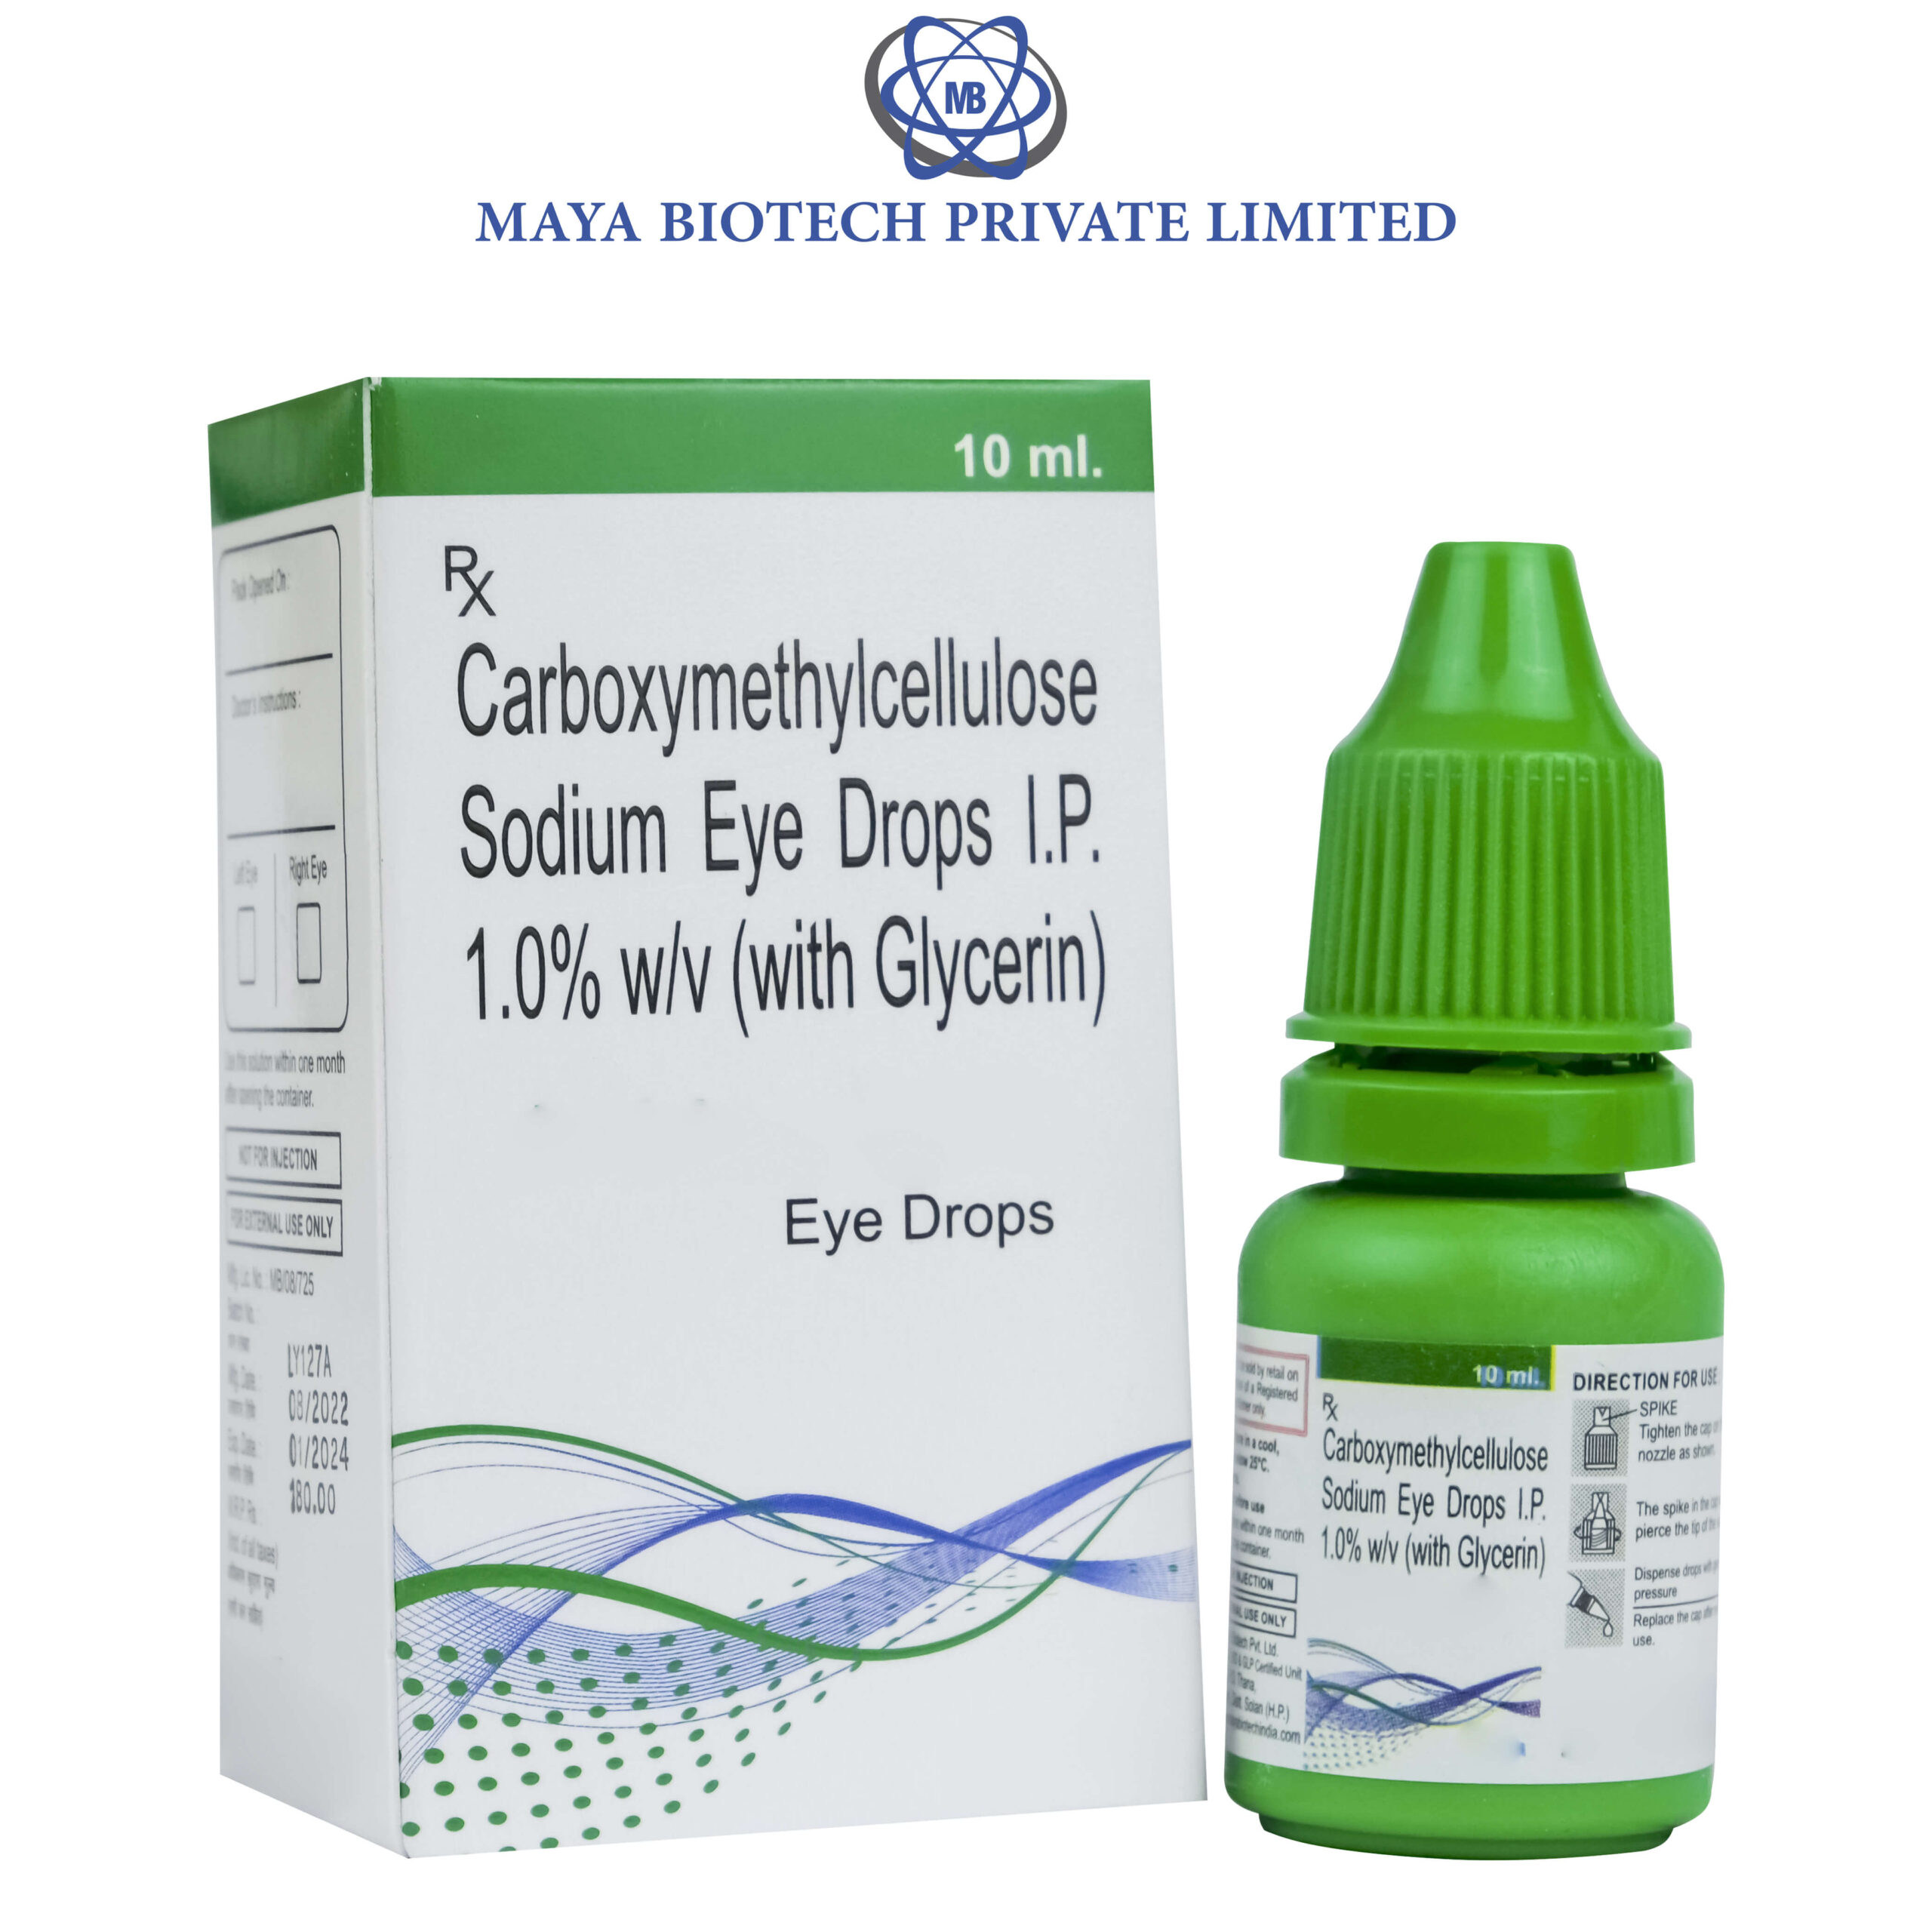 mayabiotechindia -     Carboxymethylcellulose Sodium Eye Drops